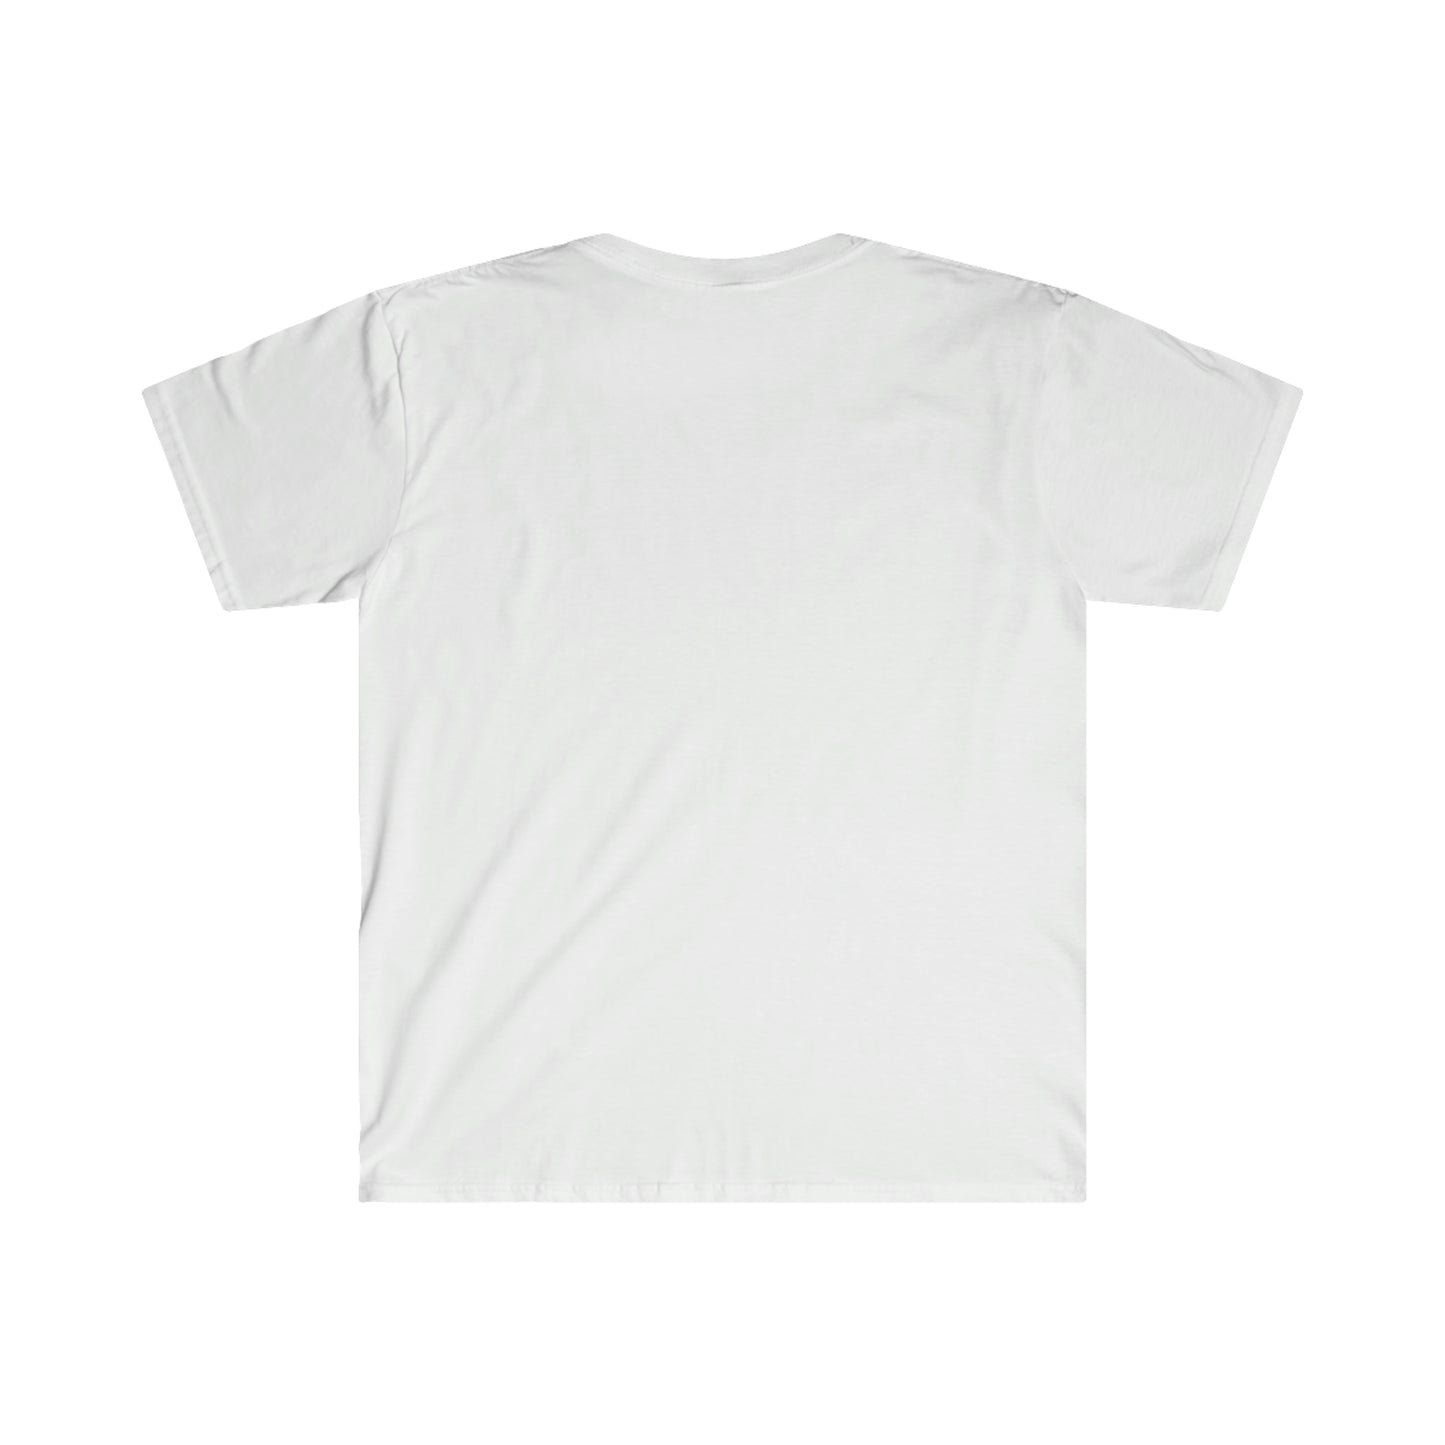 Czar's T-Shirt